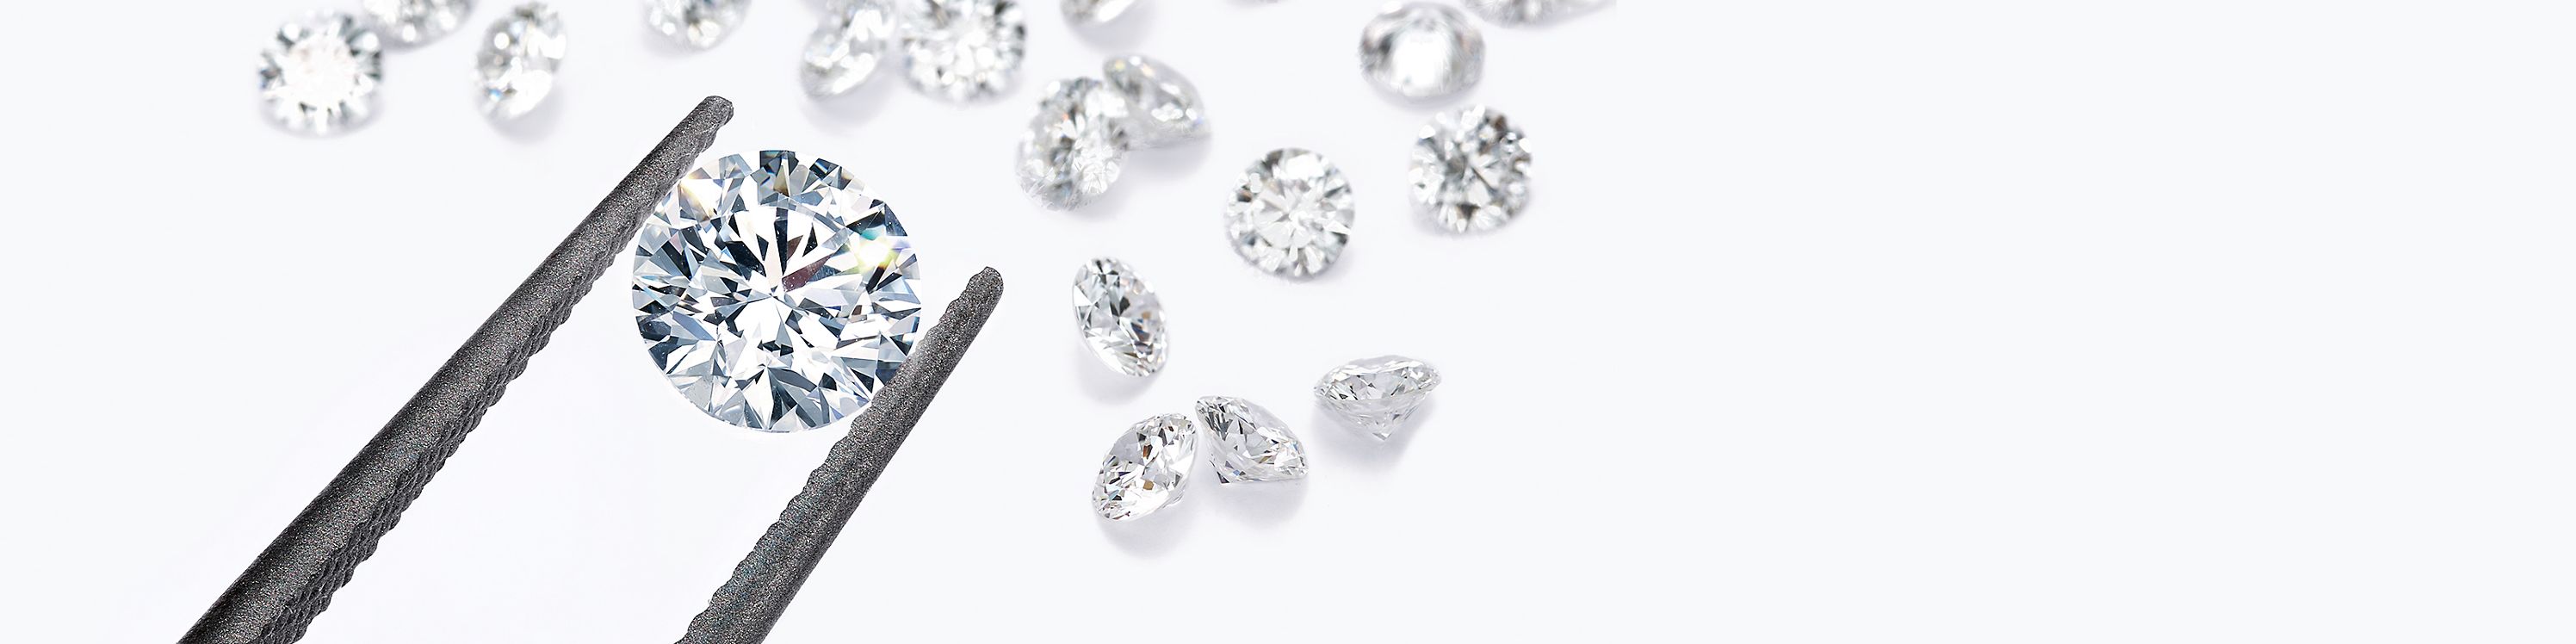 Purezza dei diamanti Tiffany & Co.